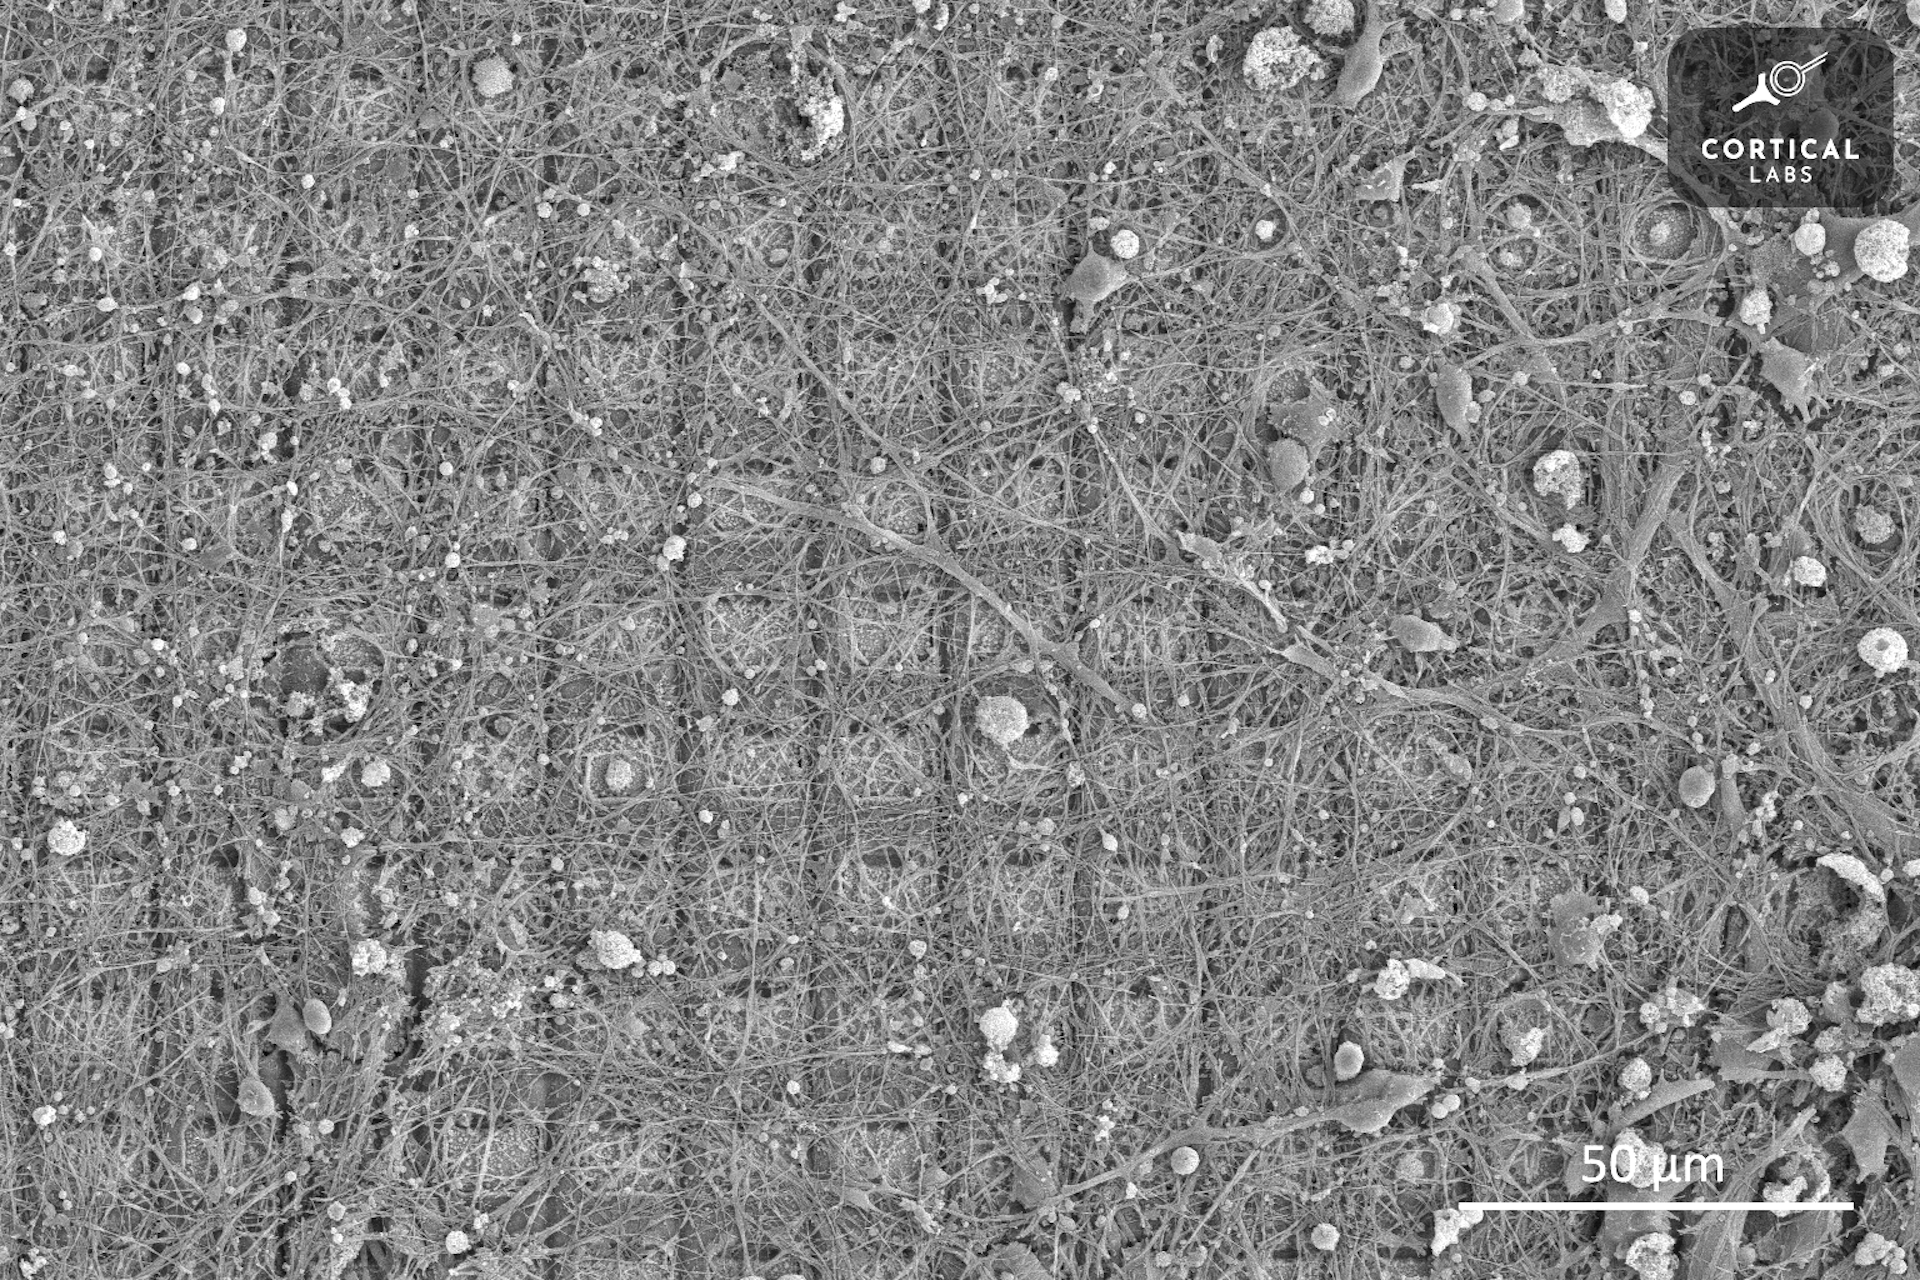 Μια εικόνα μικροσκοπίου δείχνει ένα πλέγμα από τετράγωνα καλυμμένα με μια ακανόνιστη ανάπτυξη νευρώνων που μοιάζουν με κλώνους.